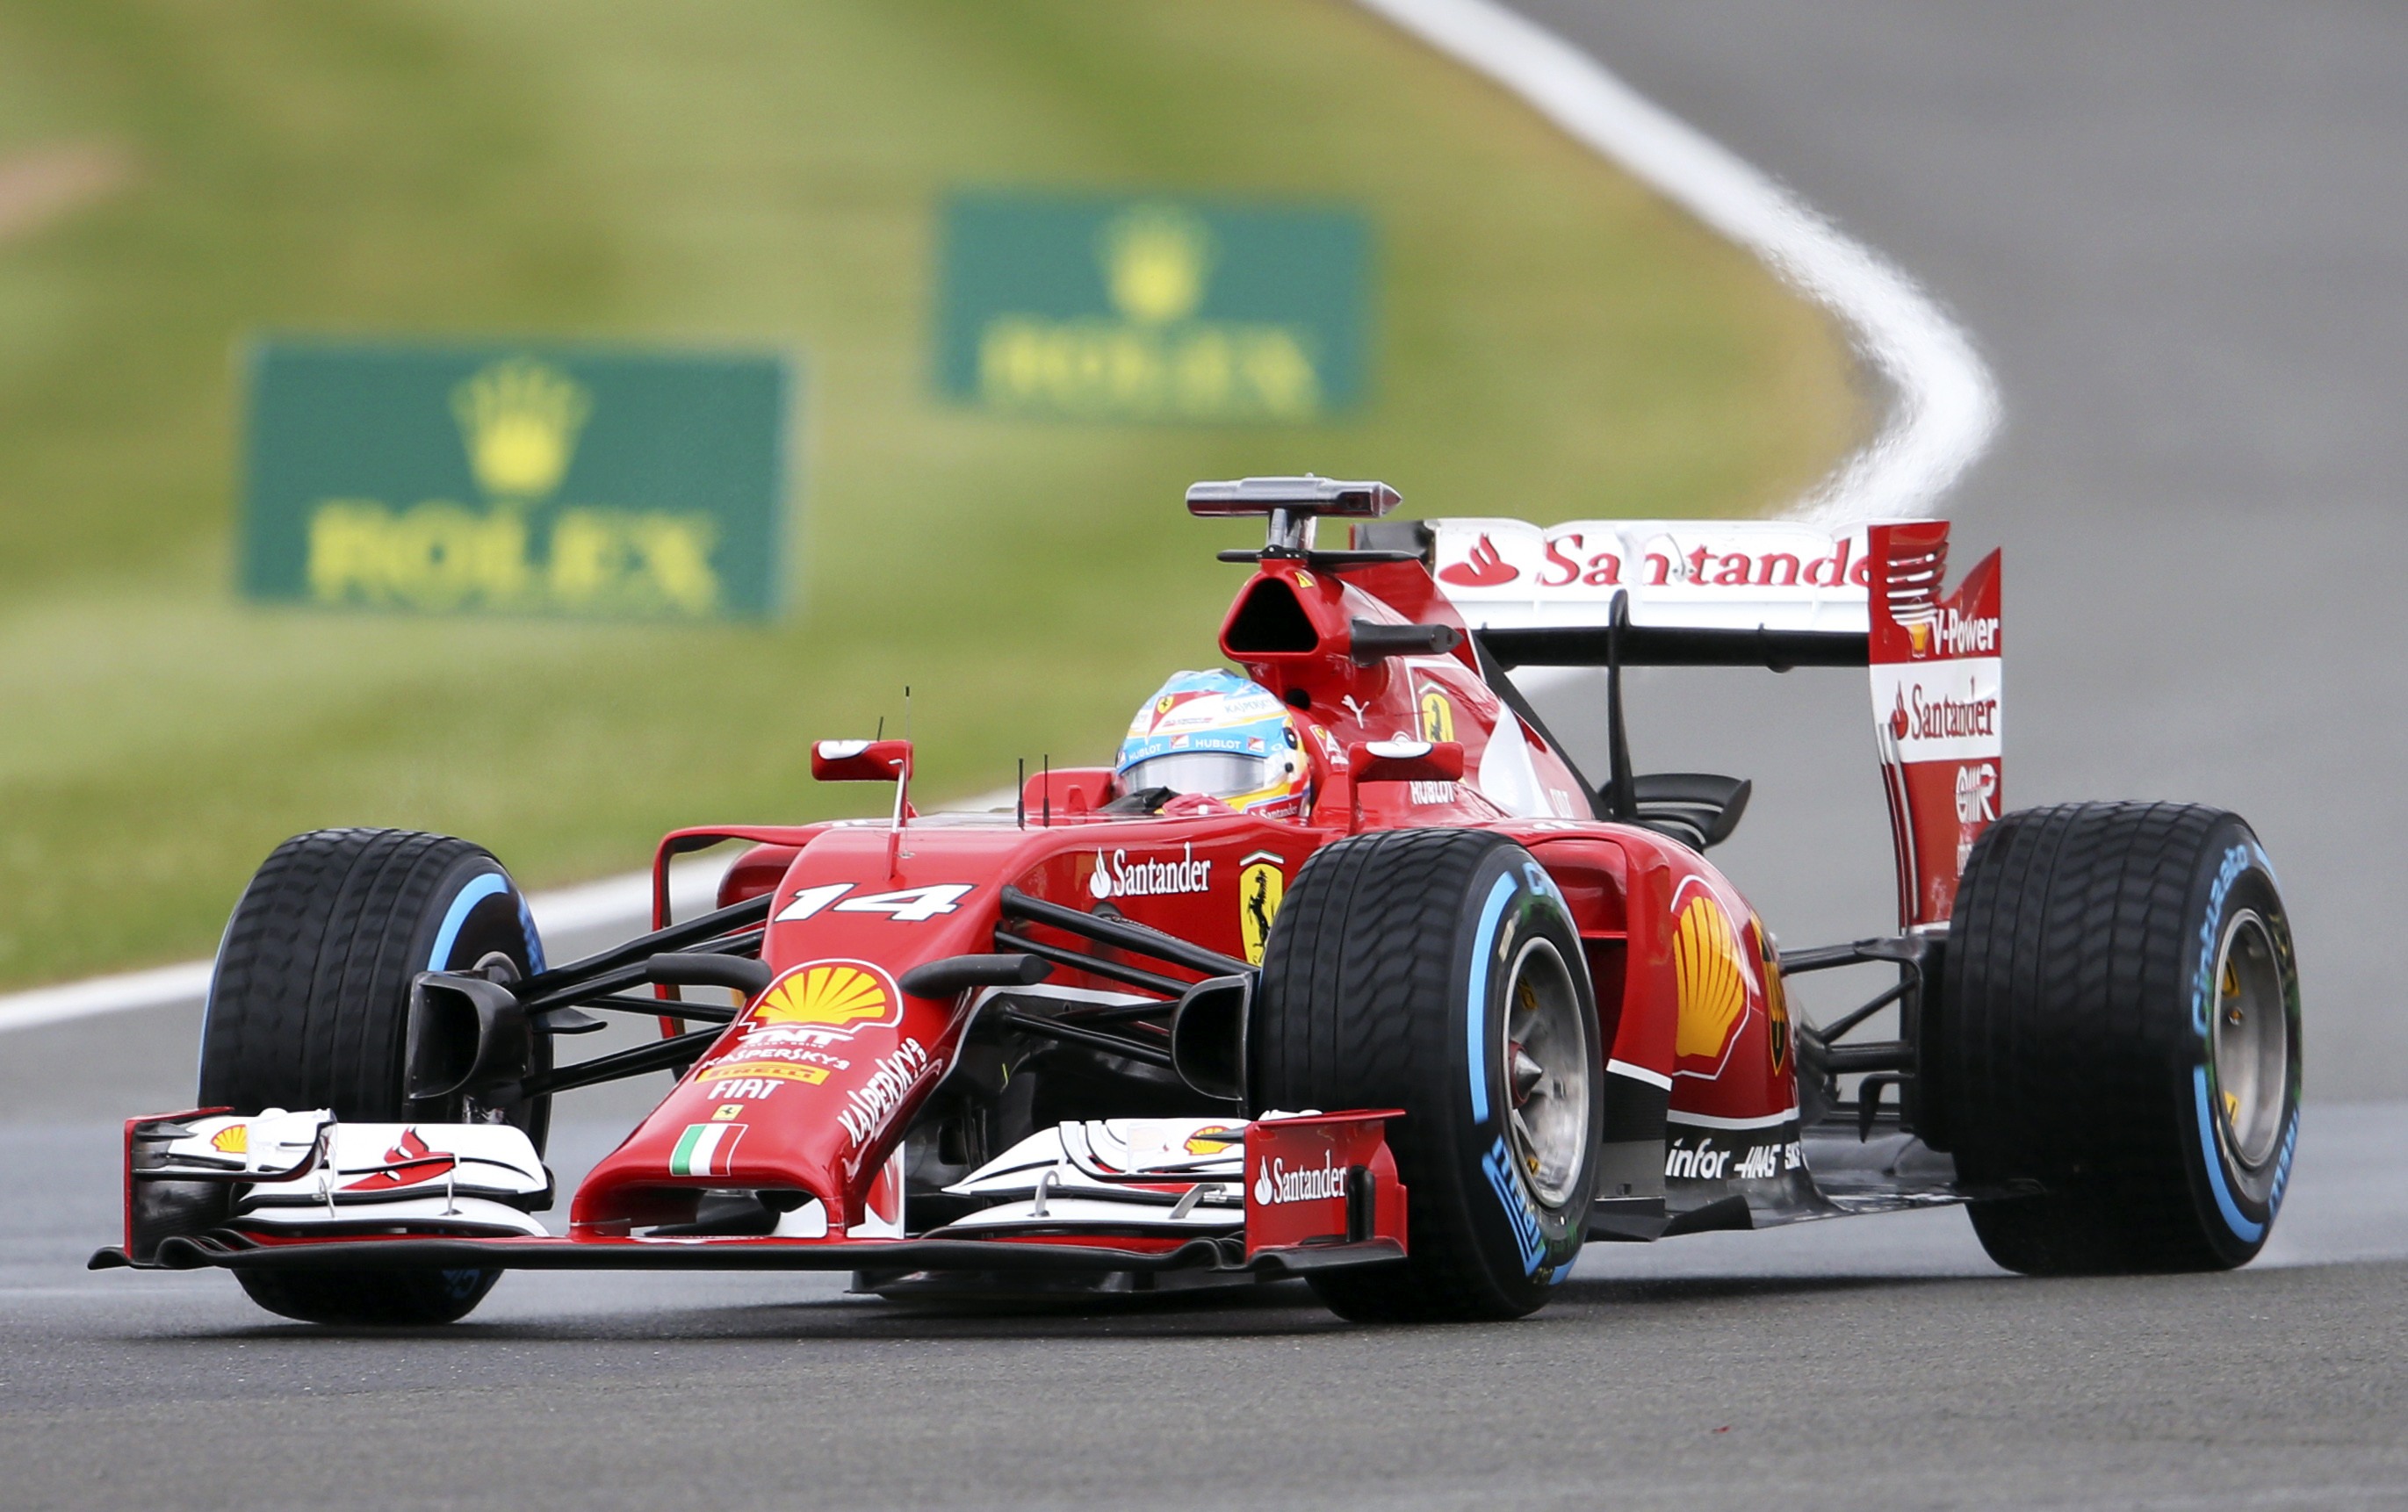 Alonso y Raikkonen eliminados en la primera sesión de la calificación (Q1)